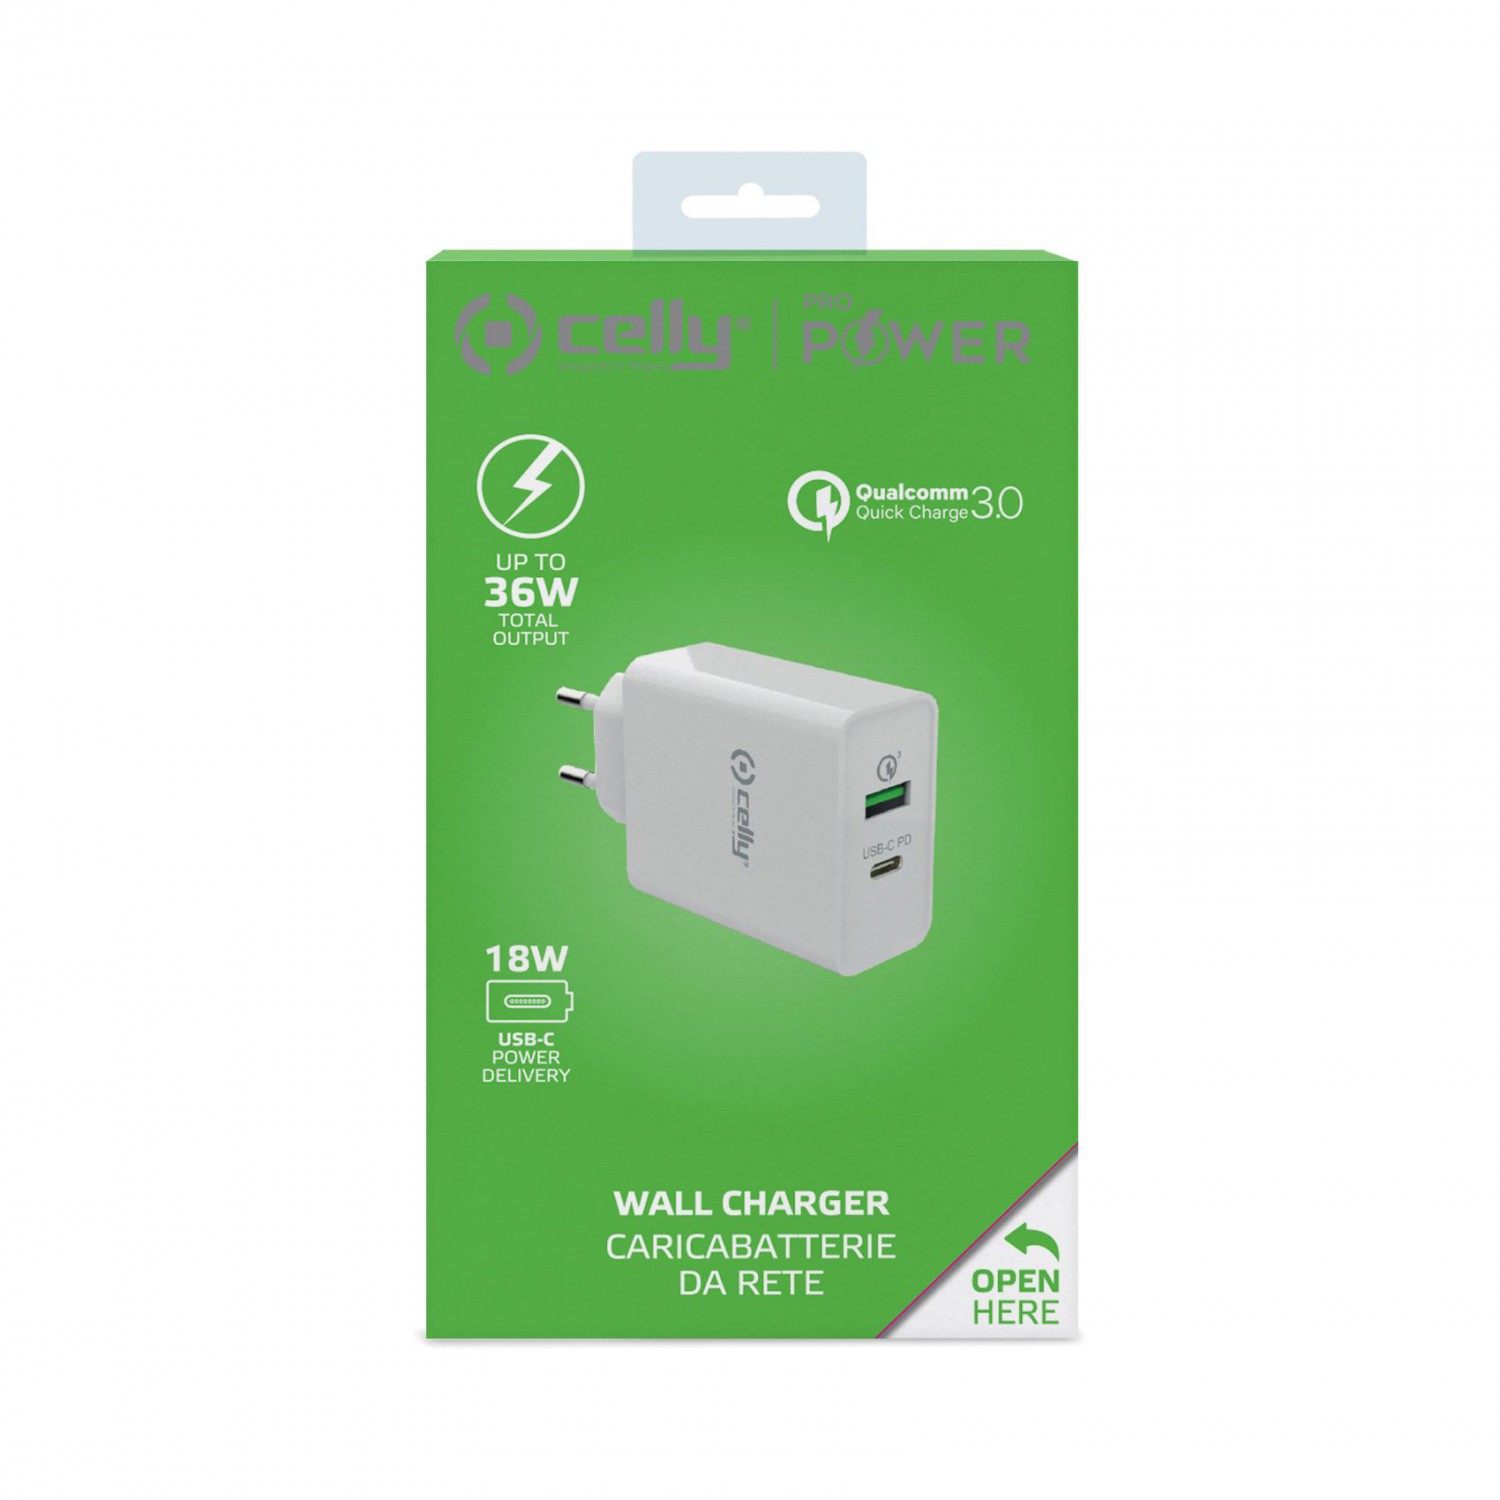 Cestovní nabíječka CELLY PRO POWER s USB-C (PD) a USB portem, Qualcomm Quick Charge 3.0, 18W max, bílá